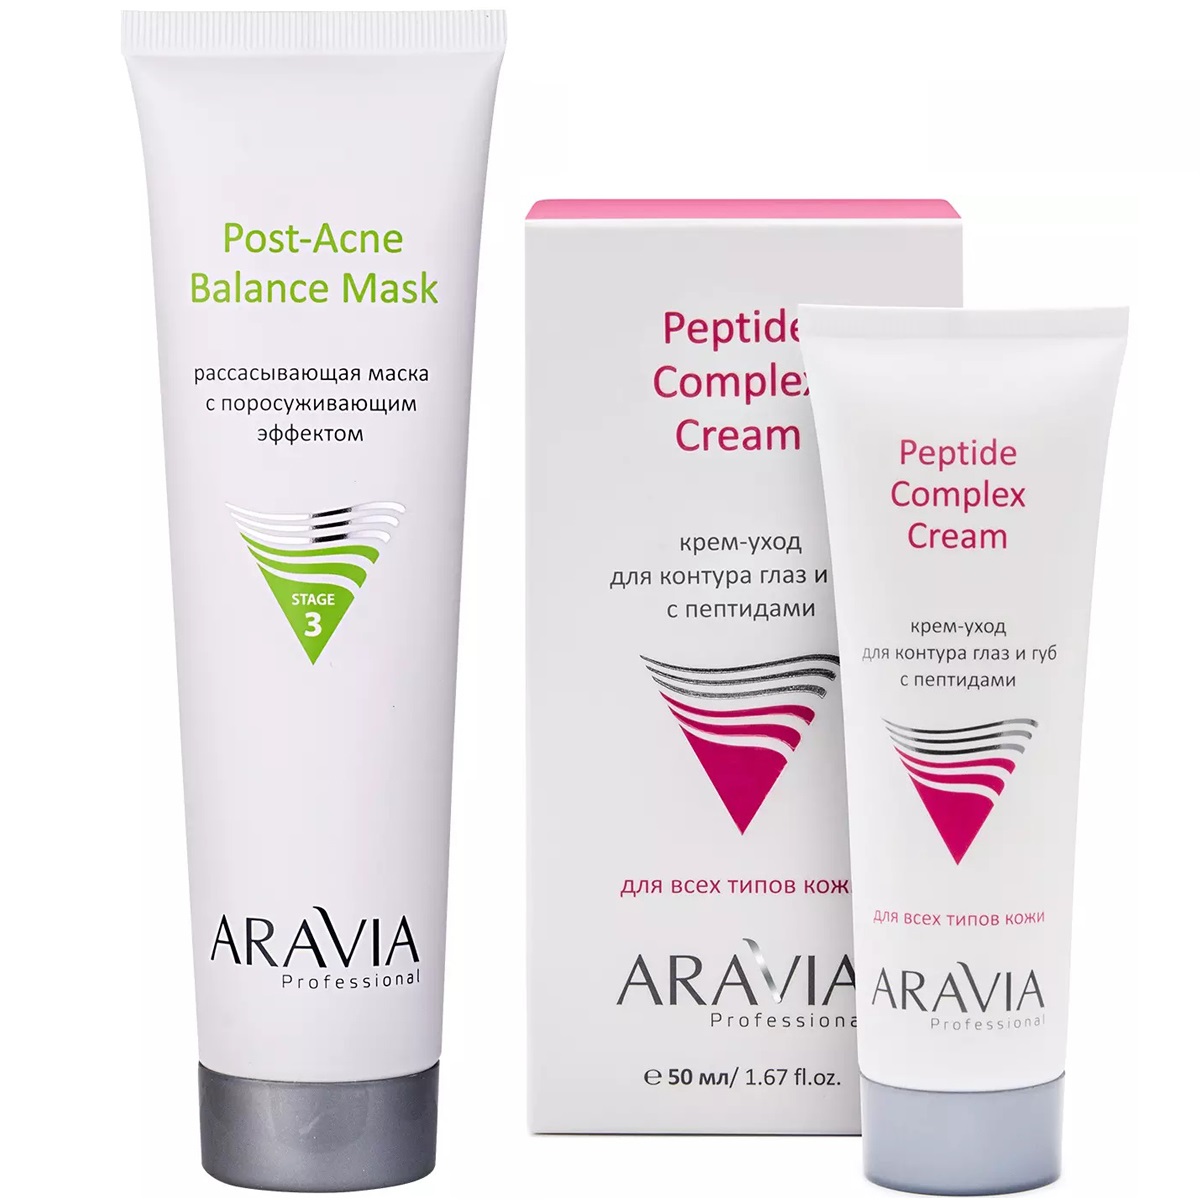 Aravia Professional Набор для ухода за кожей: крем-уход для губ и век, 50 мл + маска, 100 мл (Aravia Professional, Уход за лицом) крем уход для контура глаз и губ с пептидами peptide complex cream 50мл